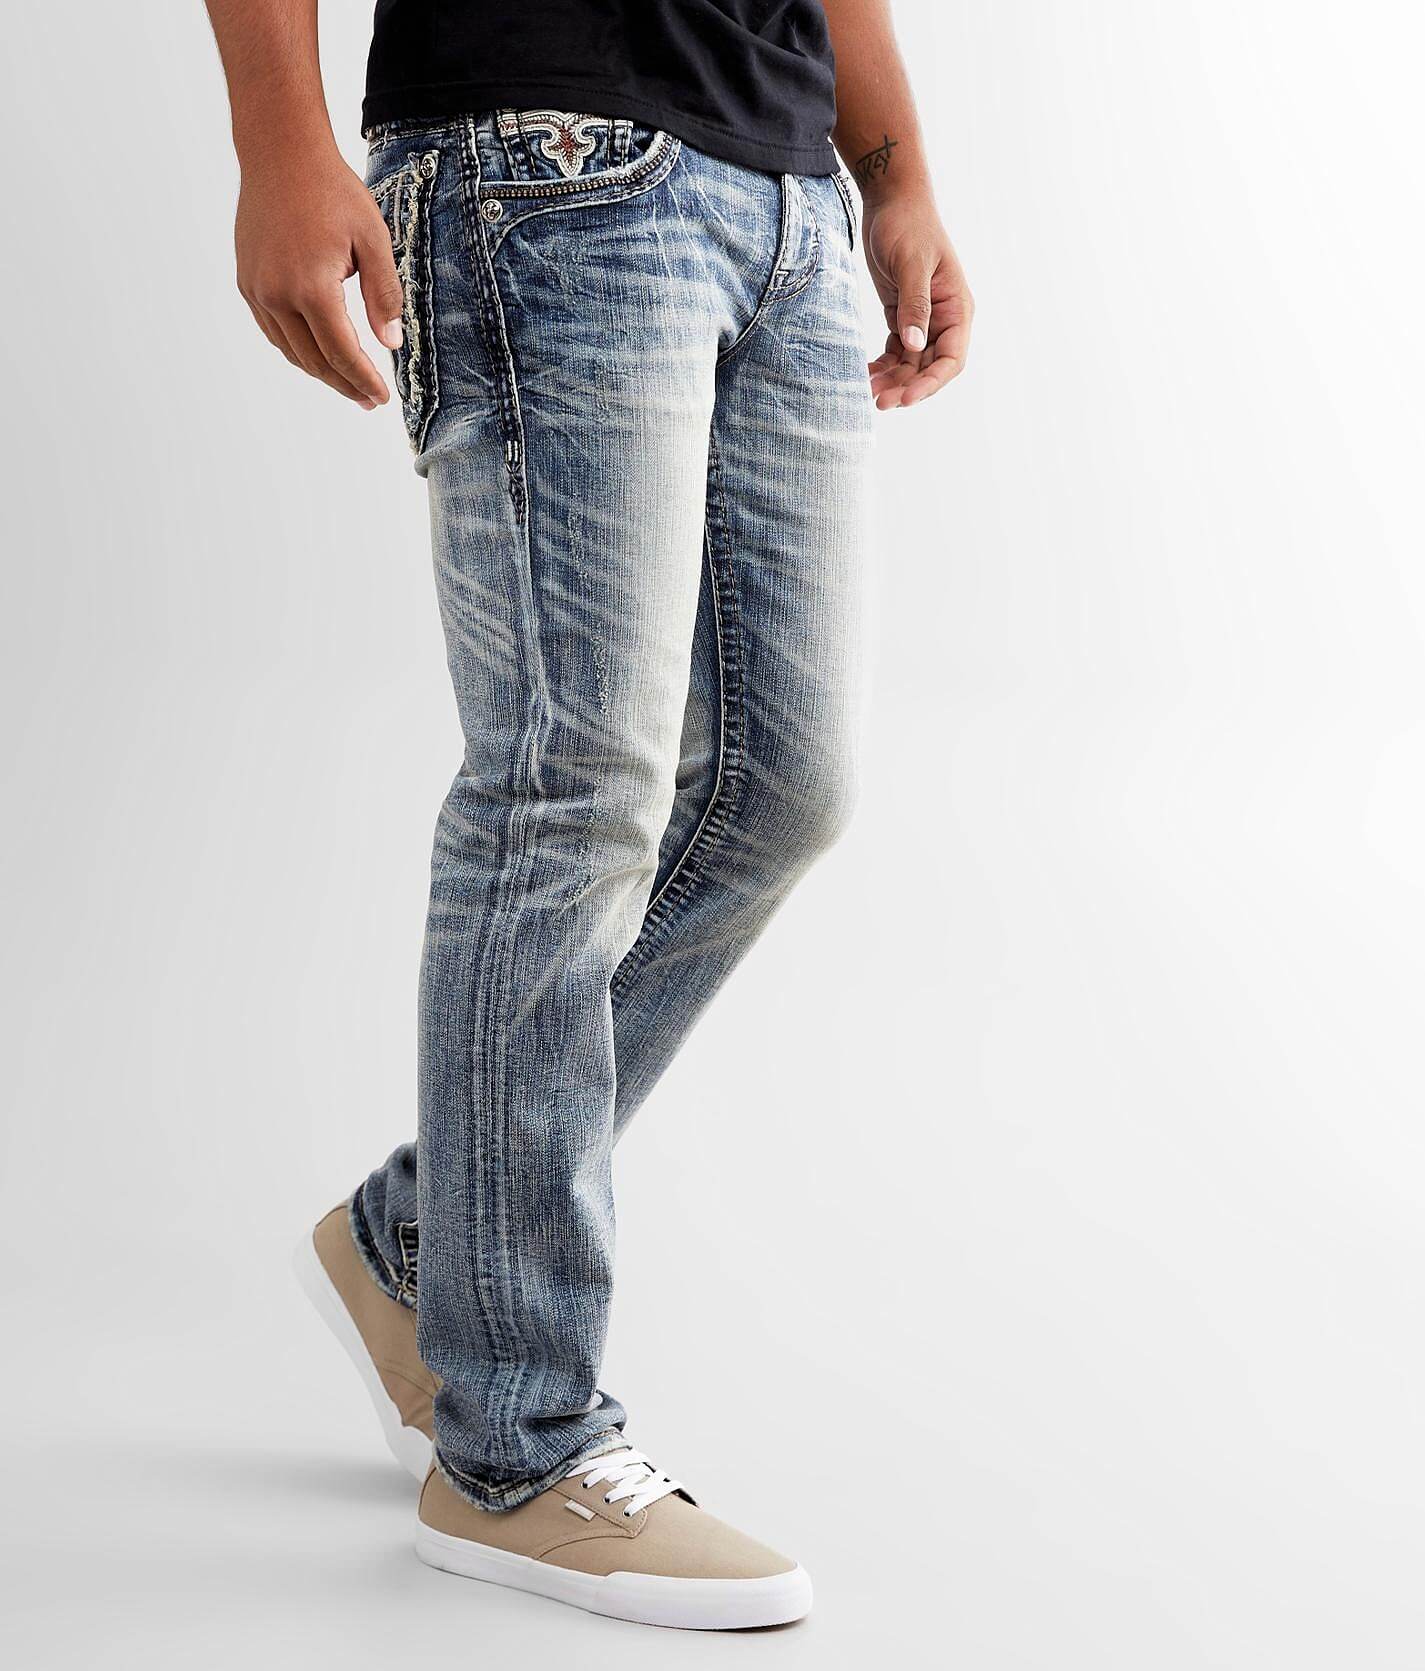 rock revival mens jeans canada